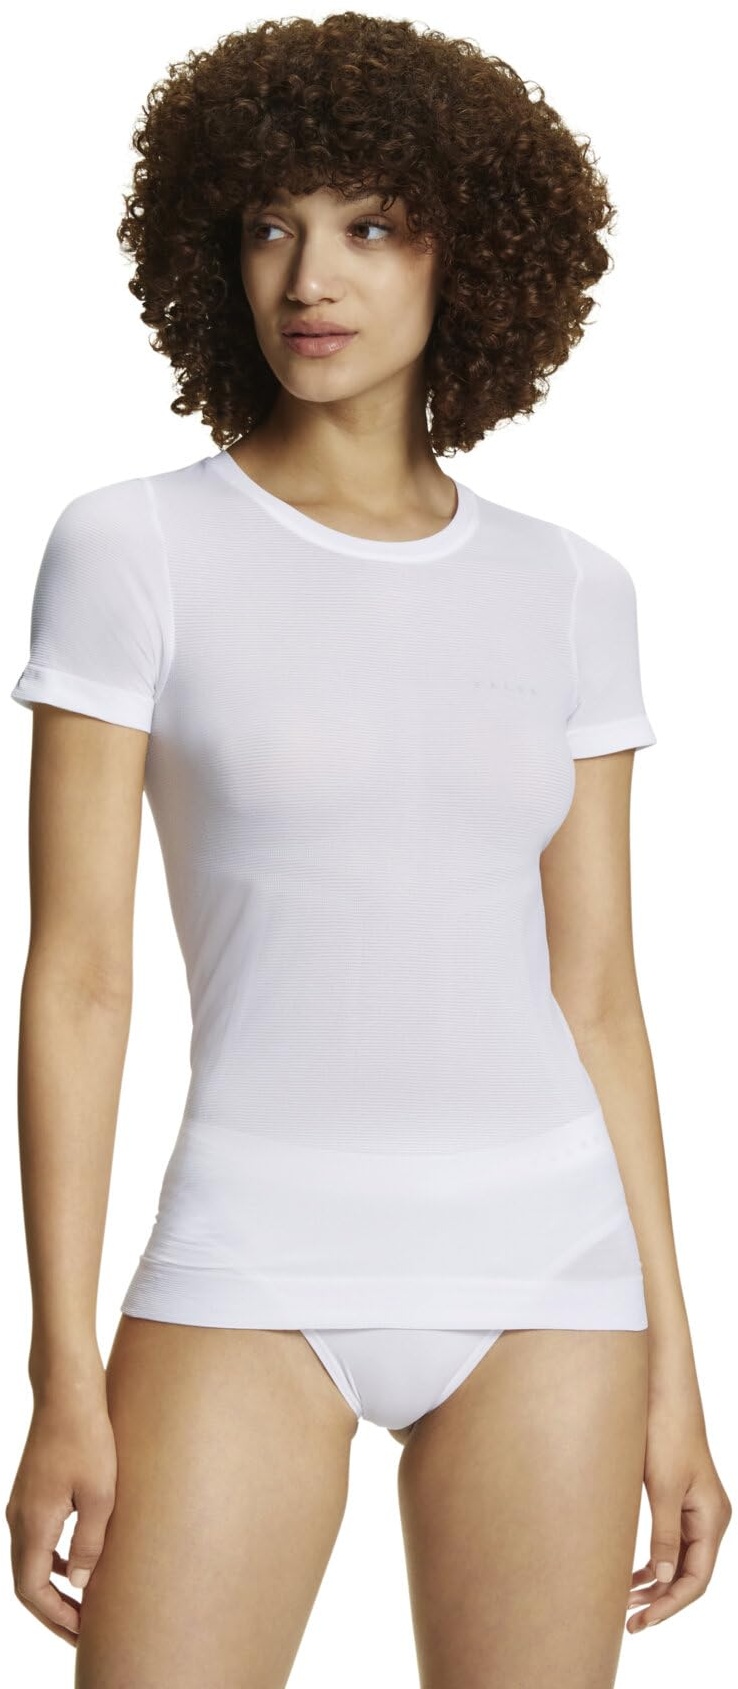 FALKE Damen Baselayer-Shirt Ultralight Cool Round Neck W S/S SH Funktionsmaterial schnelltrocknend 1 Stück, Weiß (White 2860), L